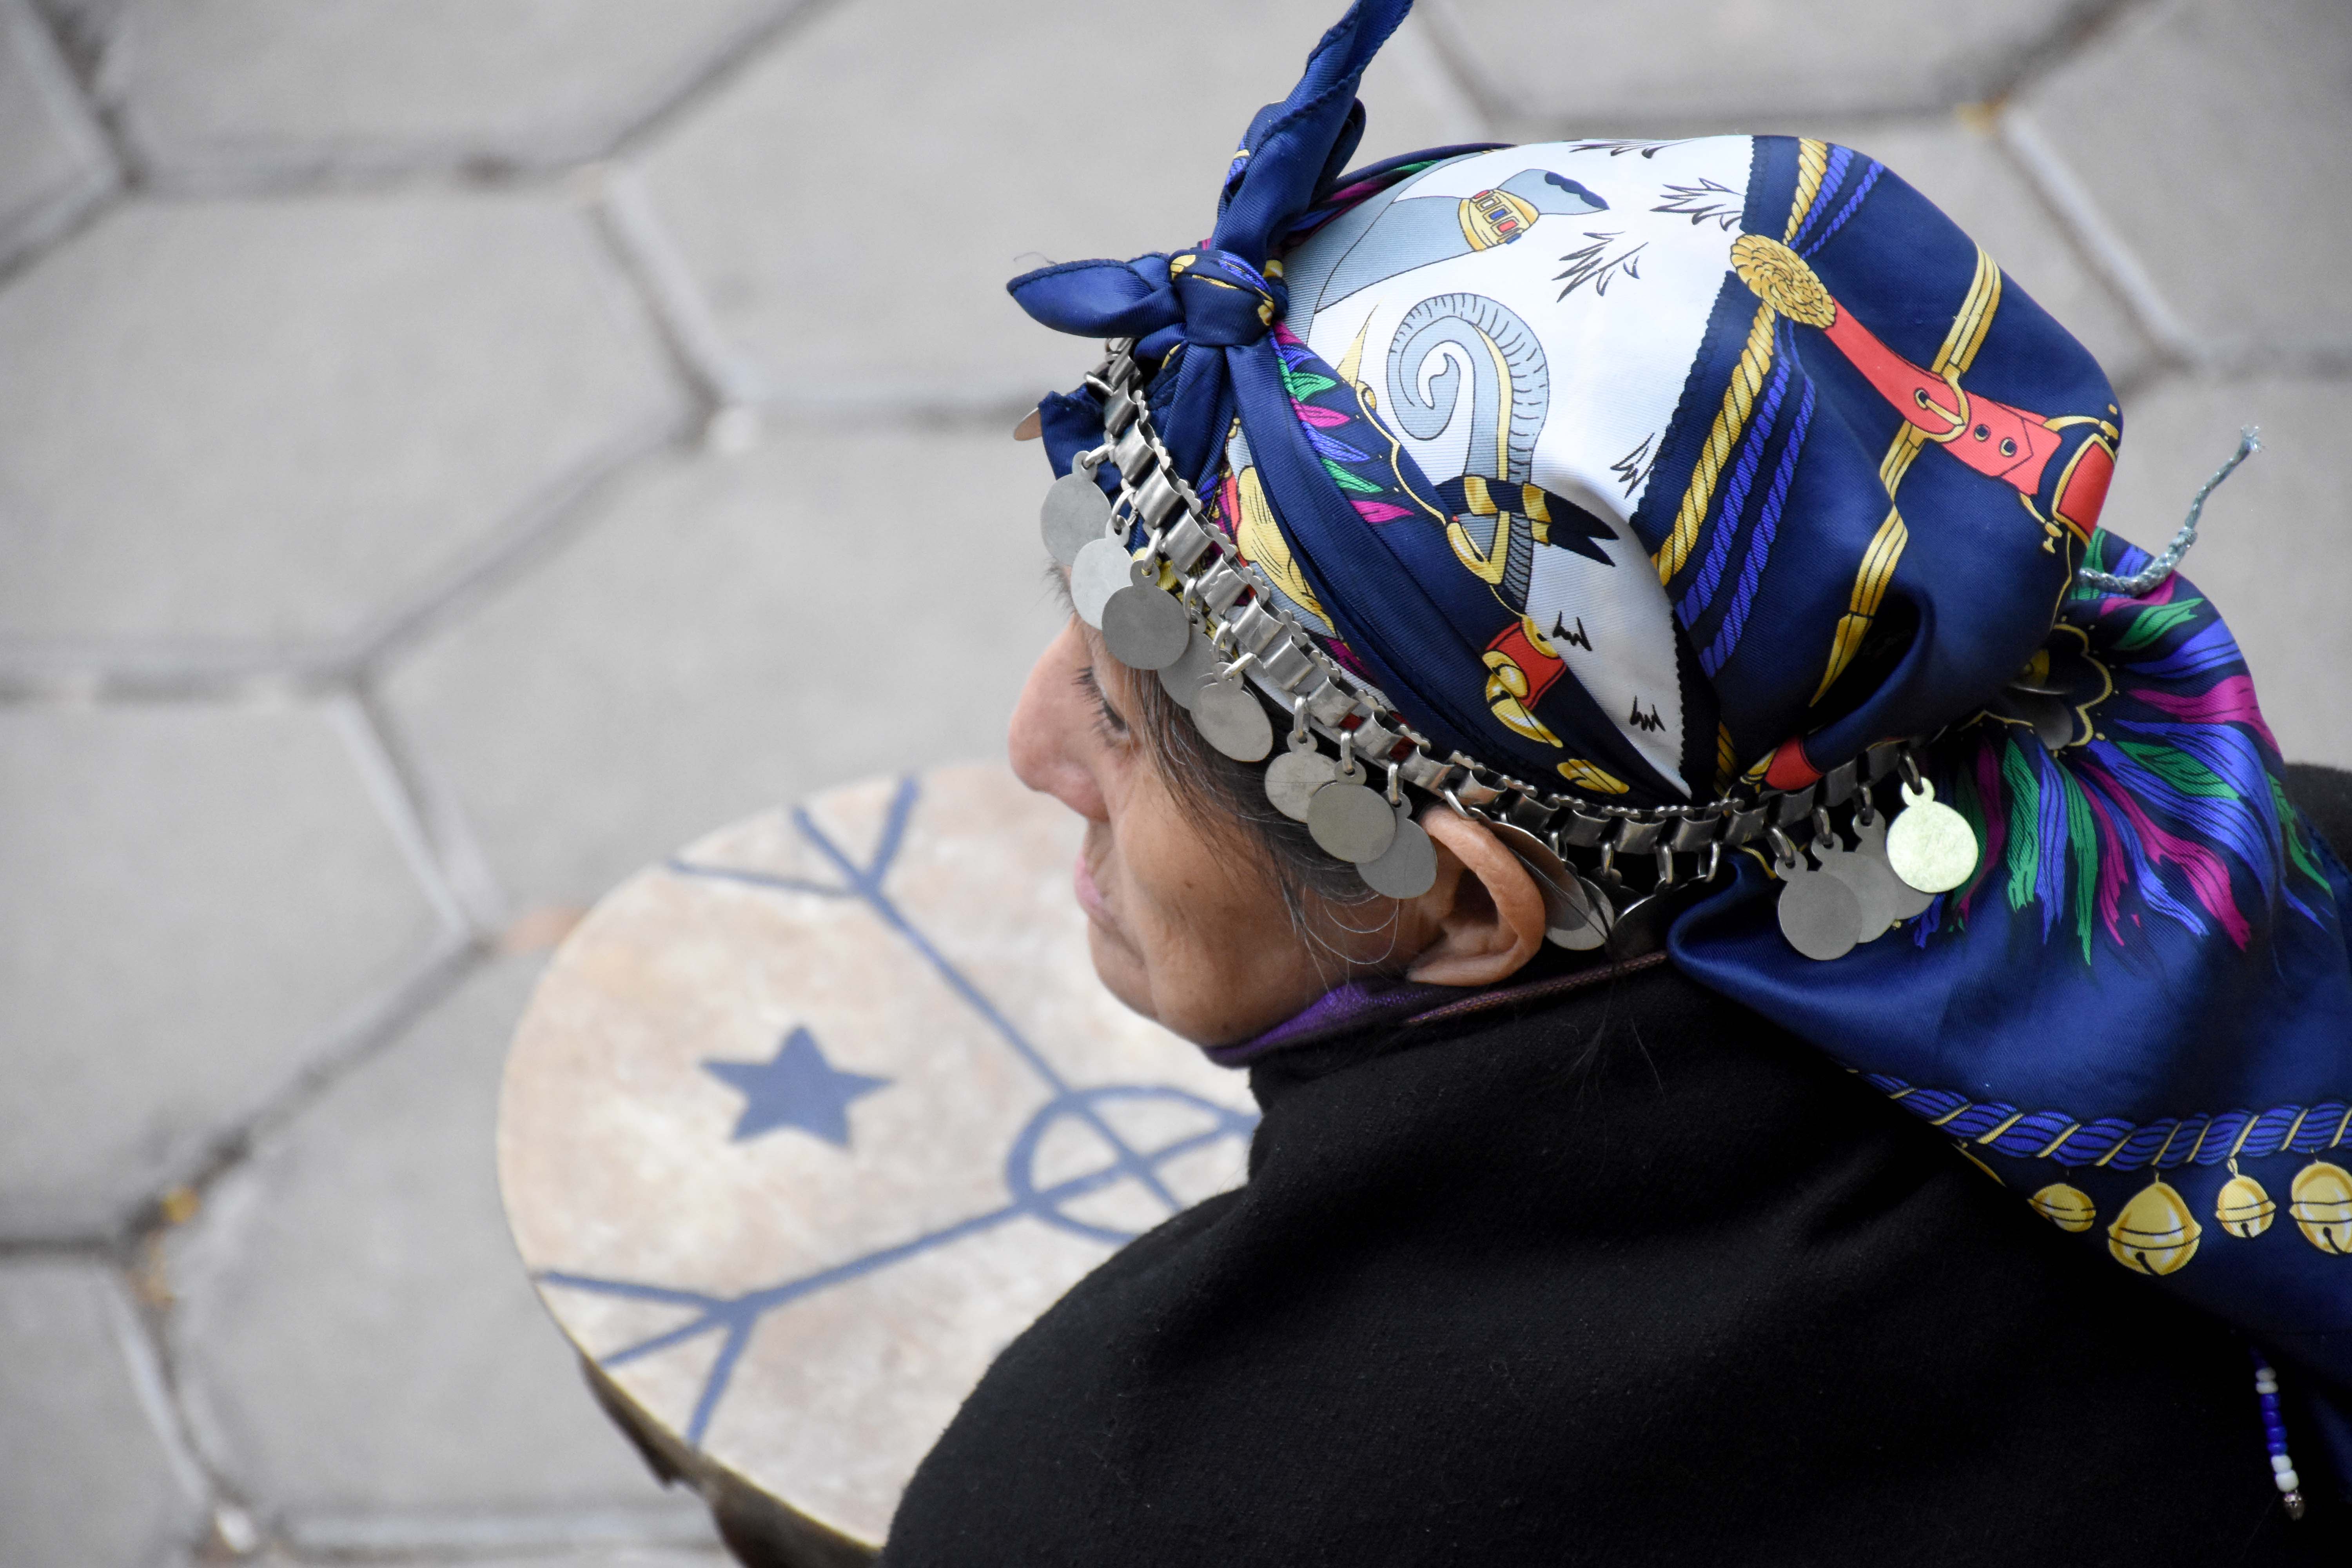 En el mes de la Memoria, invitan a participar del conversatorio “Mujeres cautivas y trabajo forzado a fines del siglo XIX”, para analizar el genocidio del pueblo mapuche. (Foto: Matías Subat).